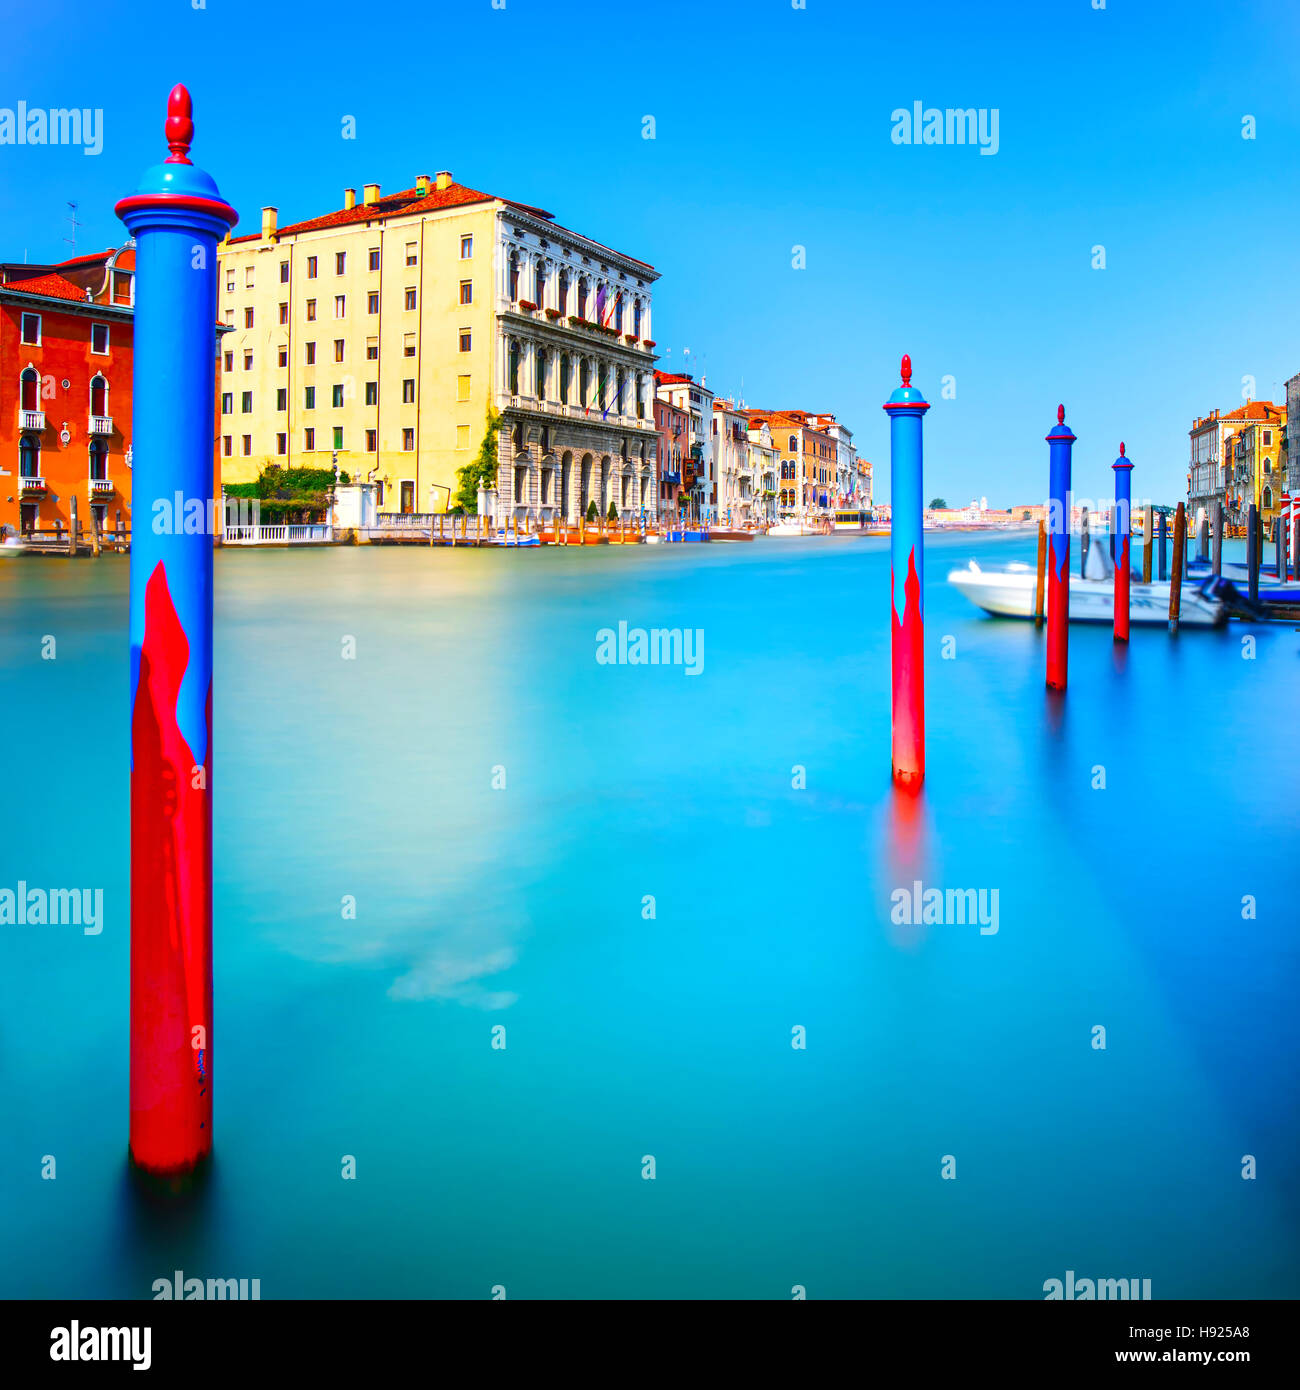 Poli e acqua dolce sulla laguna di Venezia in Canal Grande. Fotografie con lunghi tempi di esposizione. Foto Stock